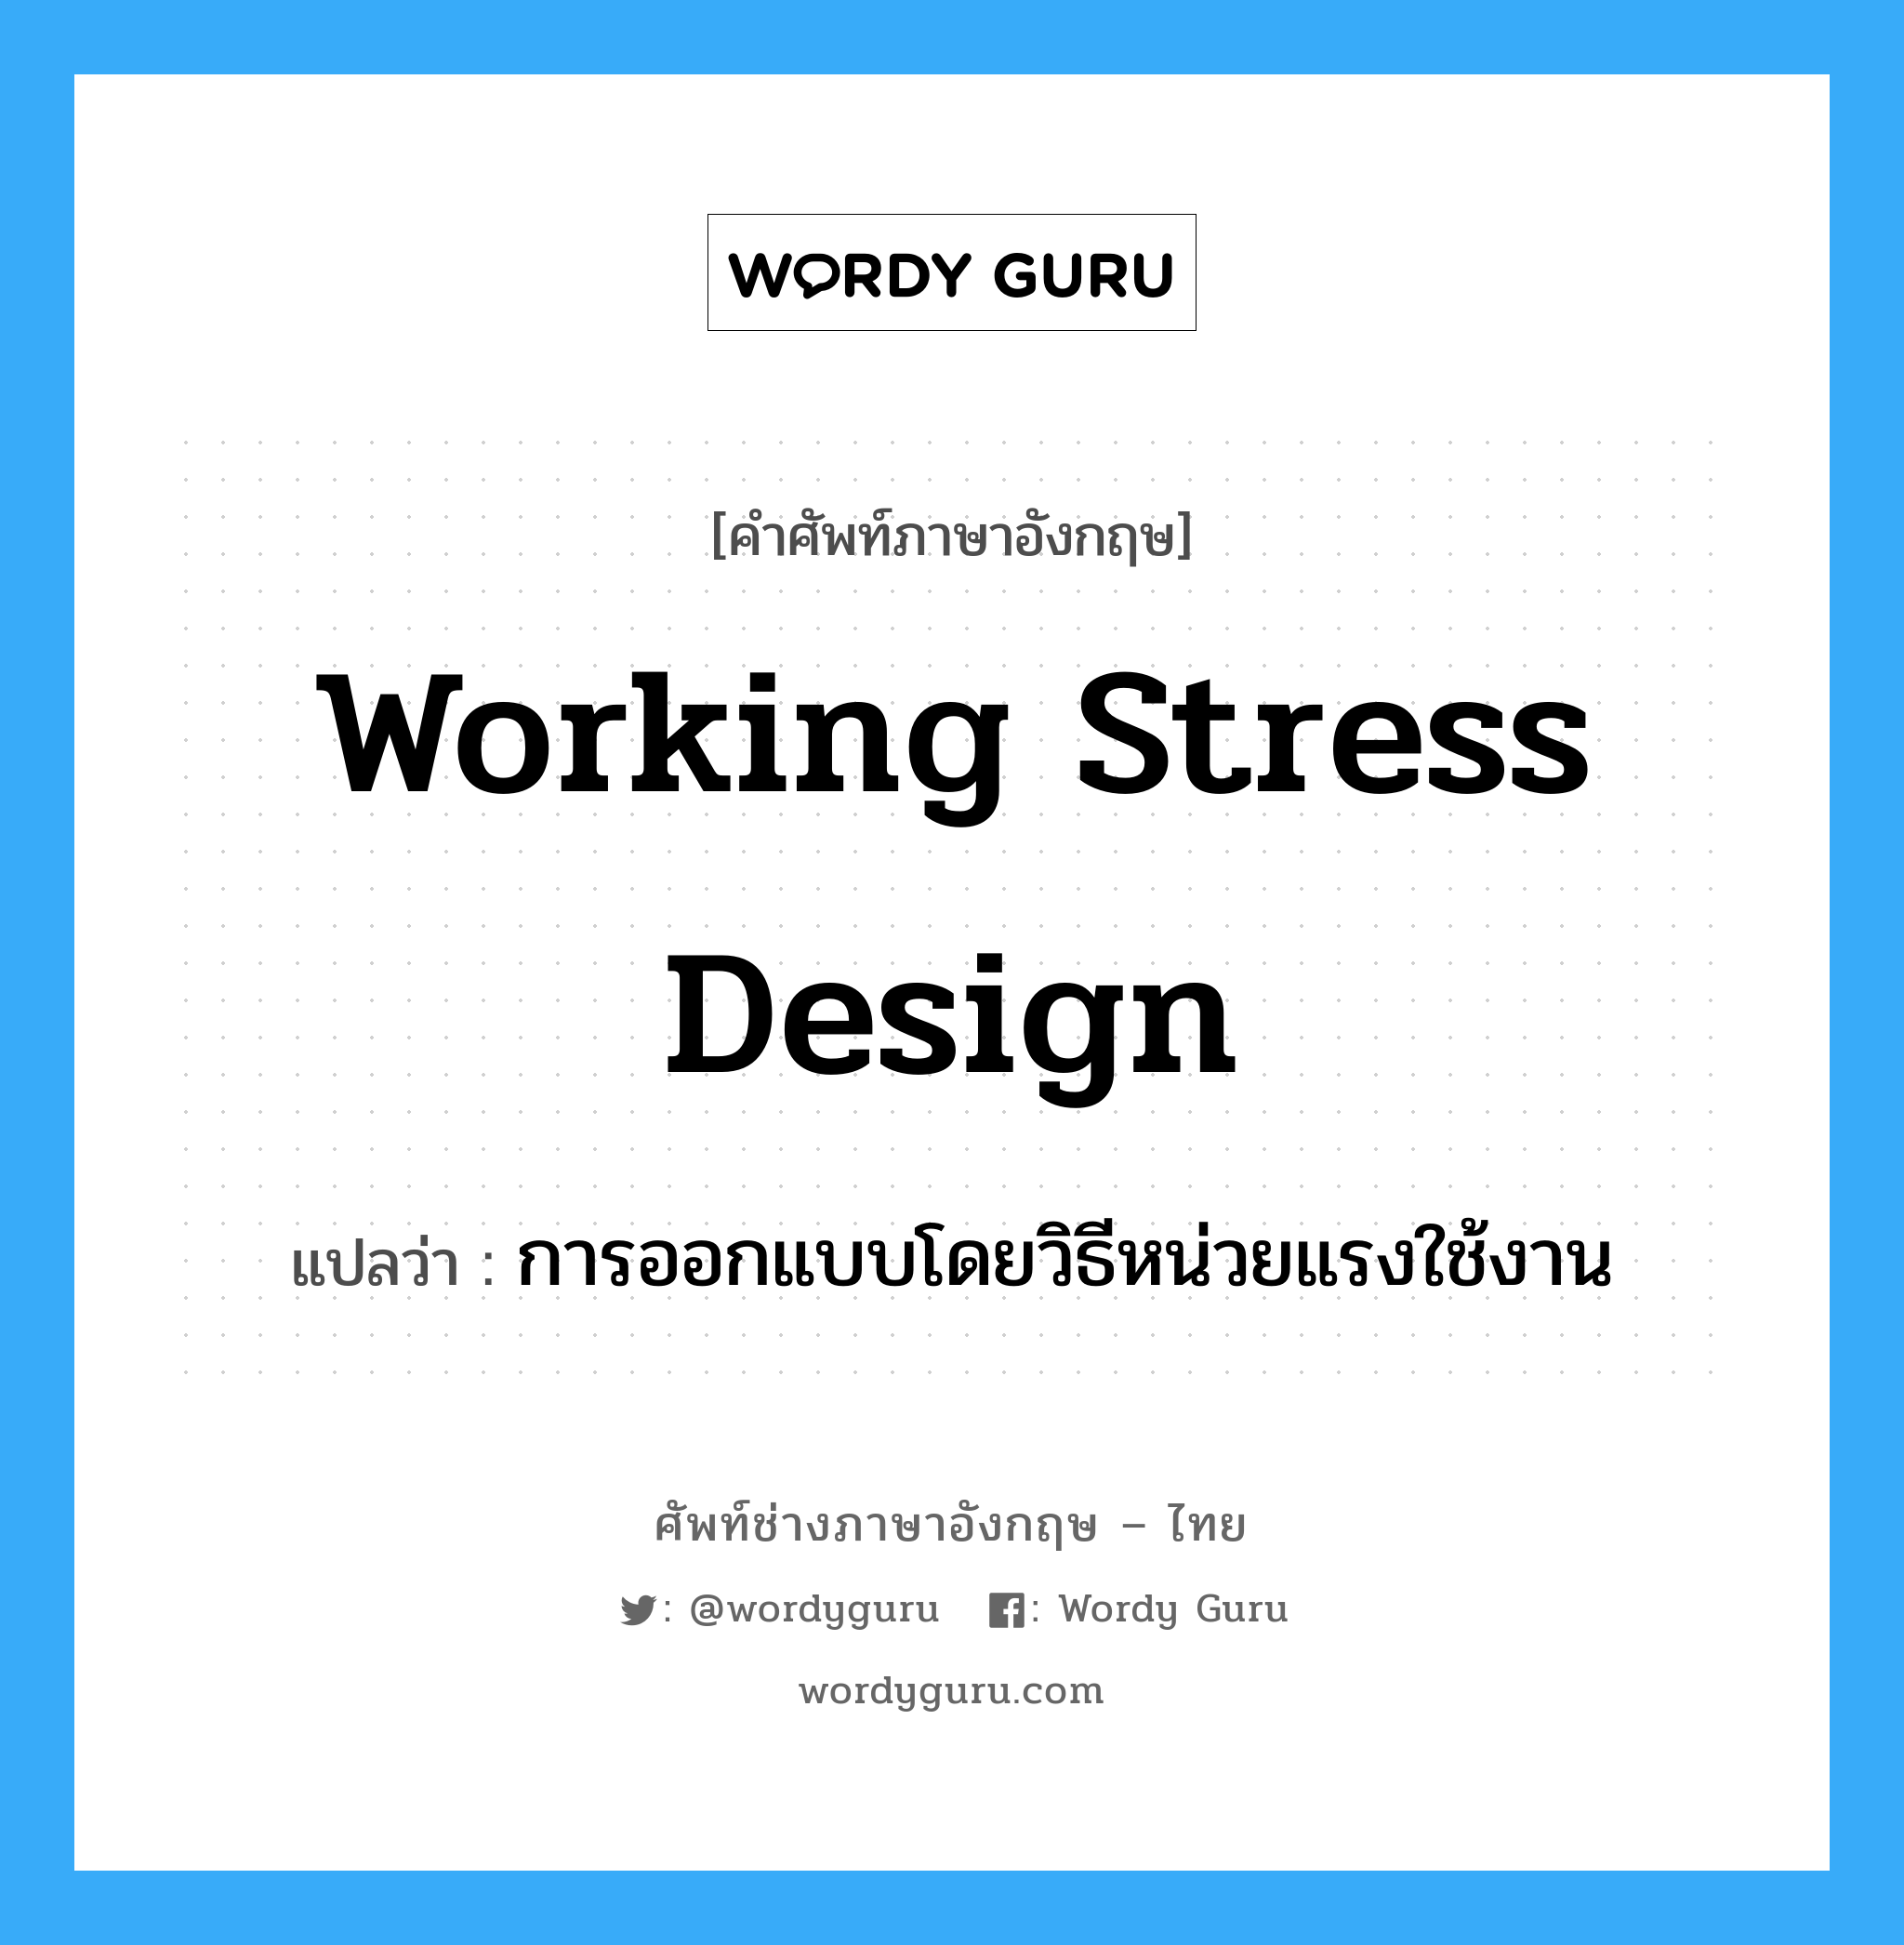 การออกแบบโดยวิธีหน่วยแรงใช้งาน ภาษาอังกฤษ?, คำศัพท์ช่างภาษาอังกฤษ - ไทย การออกแบบโดยวิธีหน่วยแรงใช้งาน คำศัพท์ภาษาอังกฤษ การออกแบบโดยวิธีหน่วยแรงใช้งาน แปลว่า working stress design